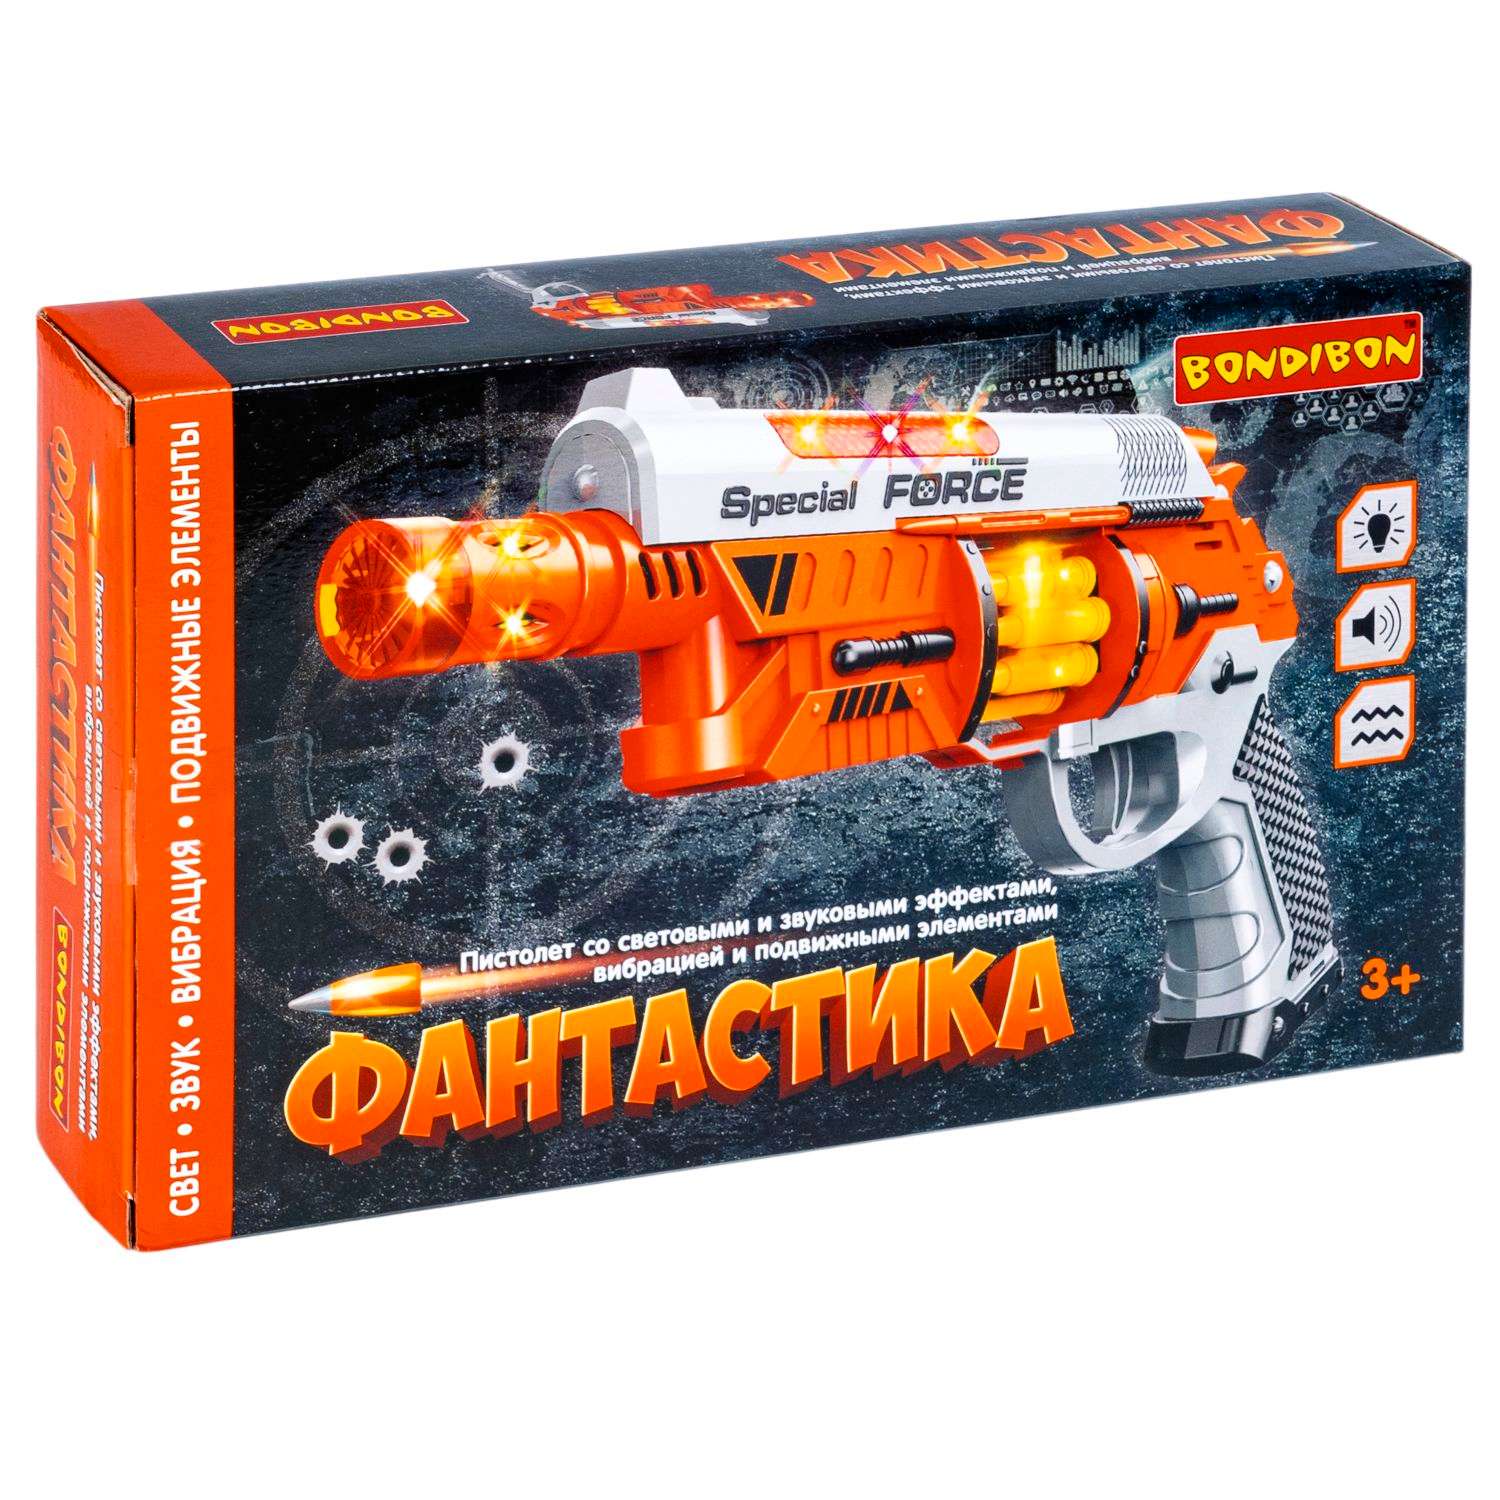 Пистолет BONDIBON Фантастика со свето-звуковым эффектом и подвижными элементами серебристо-оранжевого цвета - фото 3